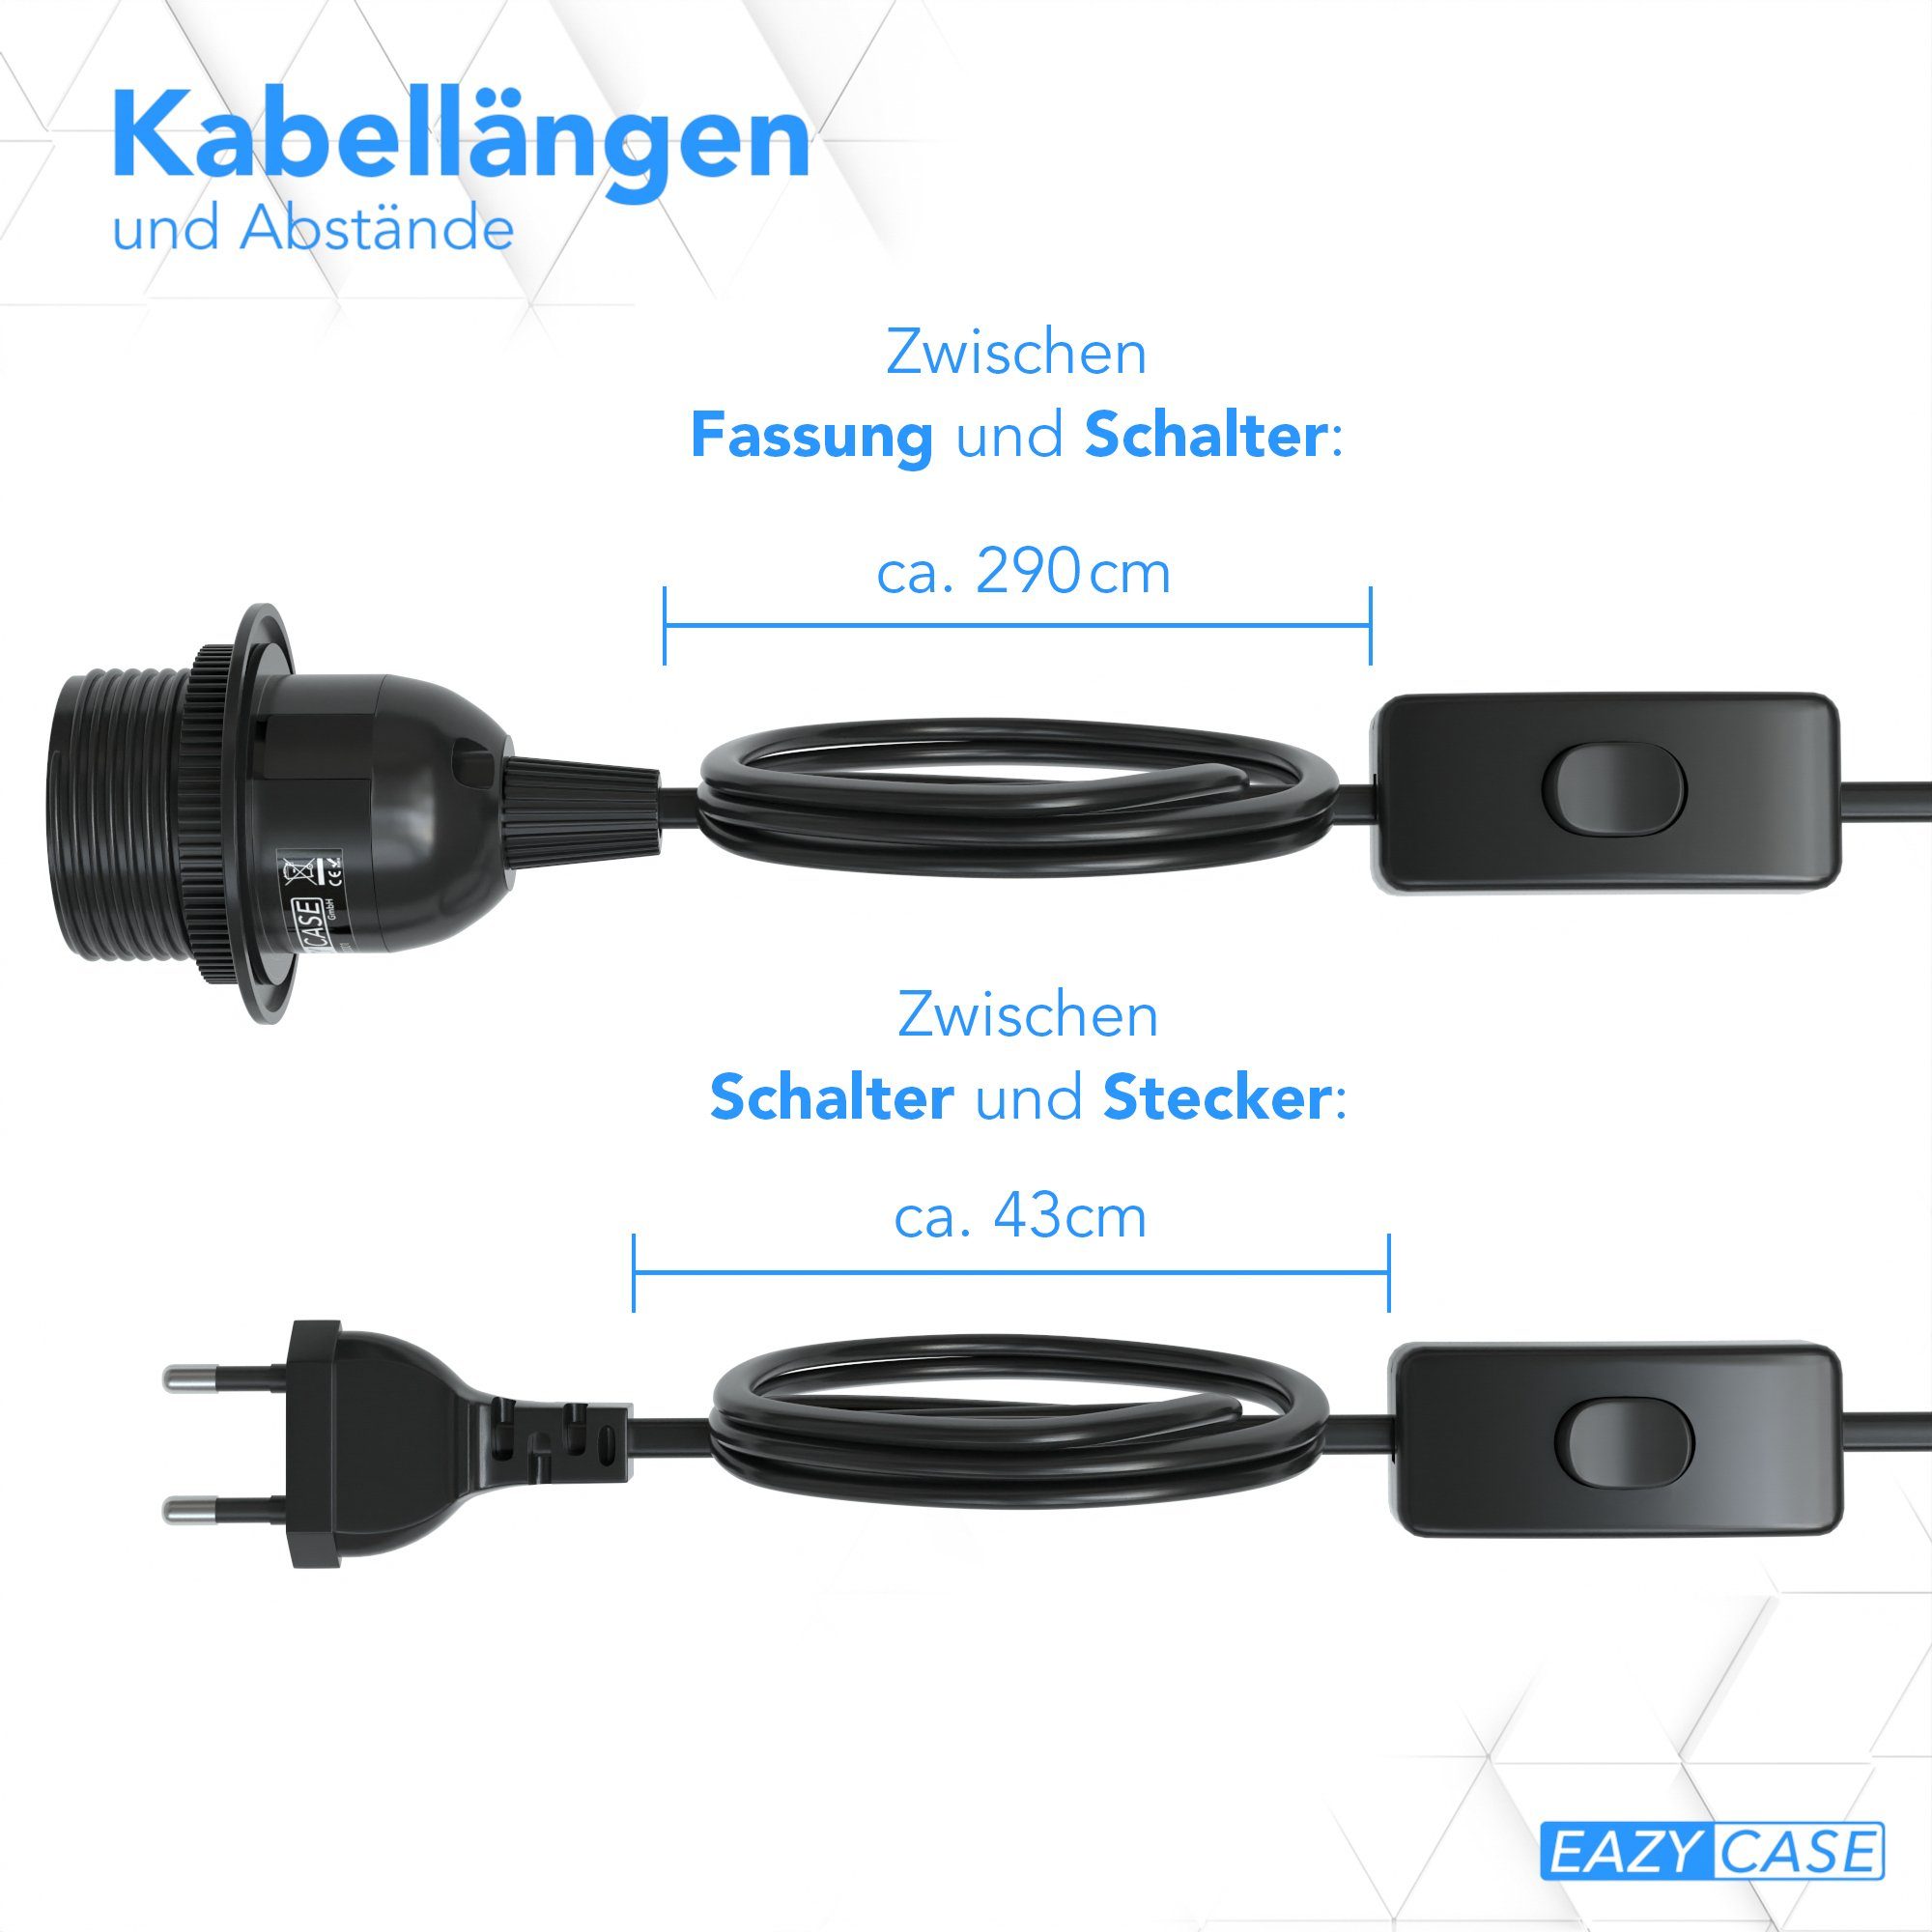 Schwarz Lampenaufhängung Lampensockel EAZY Lampenfassung mit Lampen Schalter Kabel Netzstecker Kabel Fassung und CASE E27 E27 Schalter 3,5m,